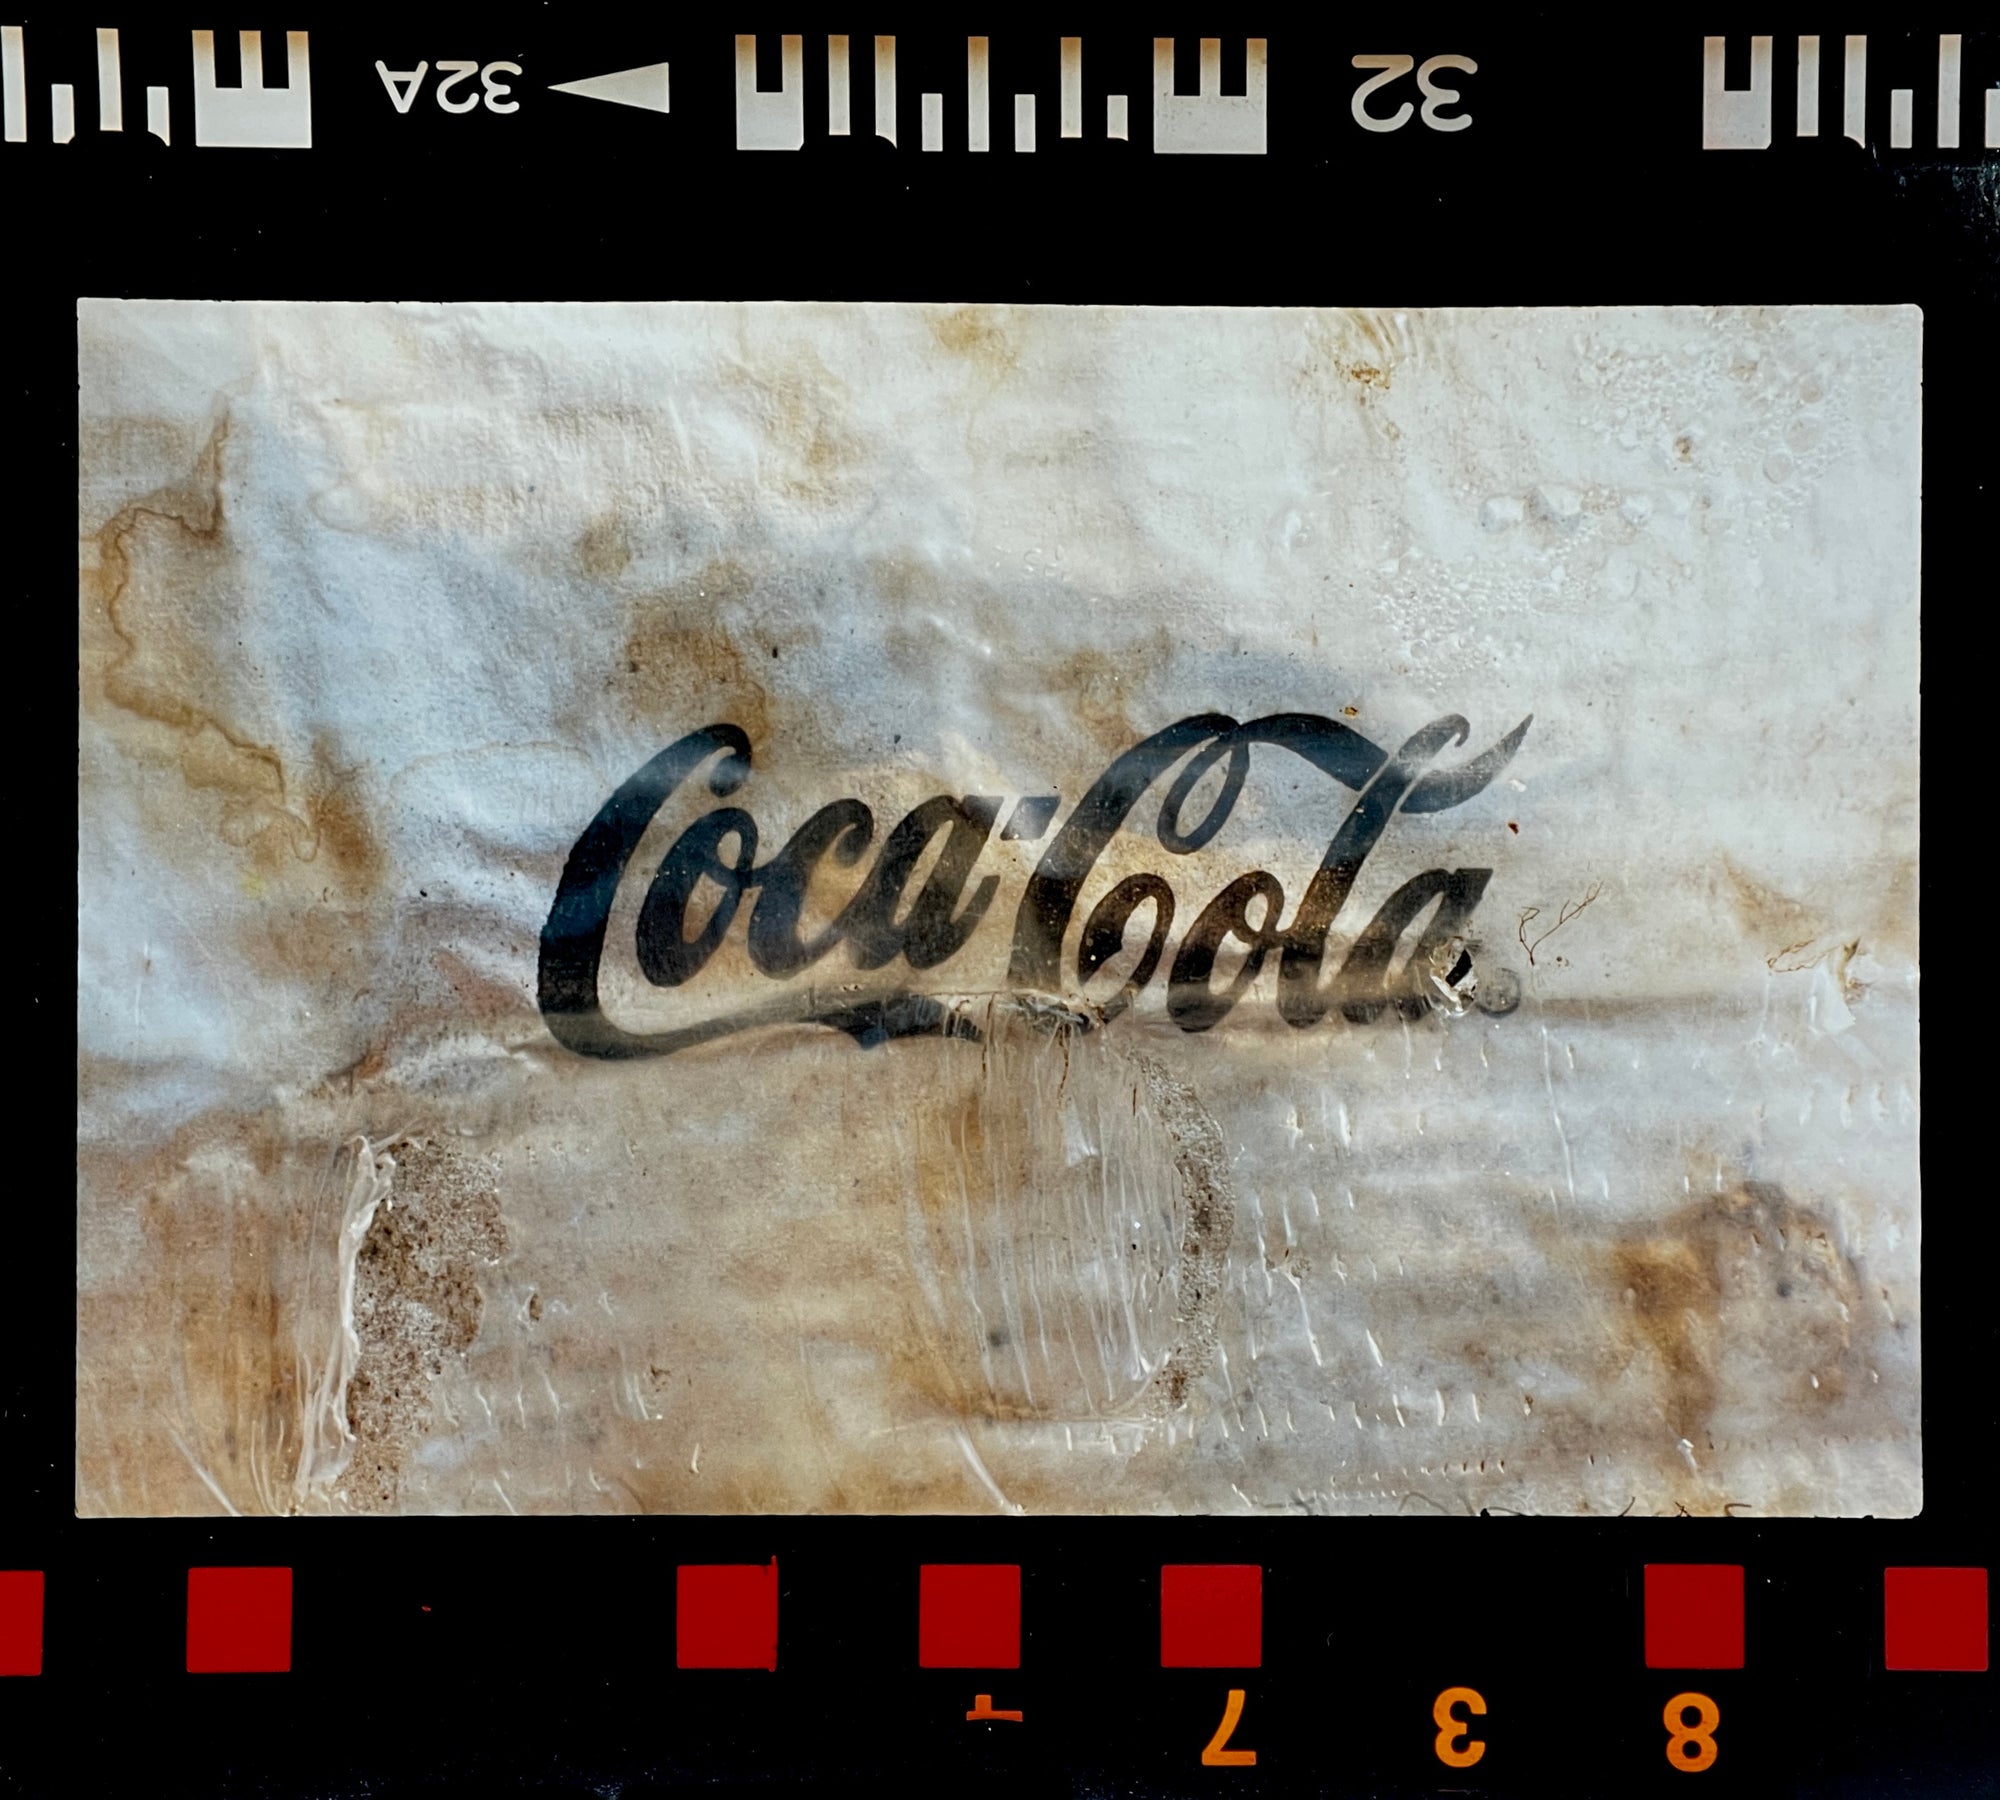 Coca-Cola, Red Lodge, 1993